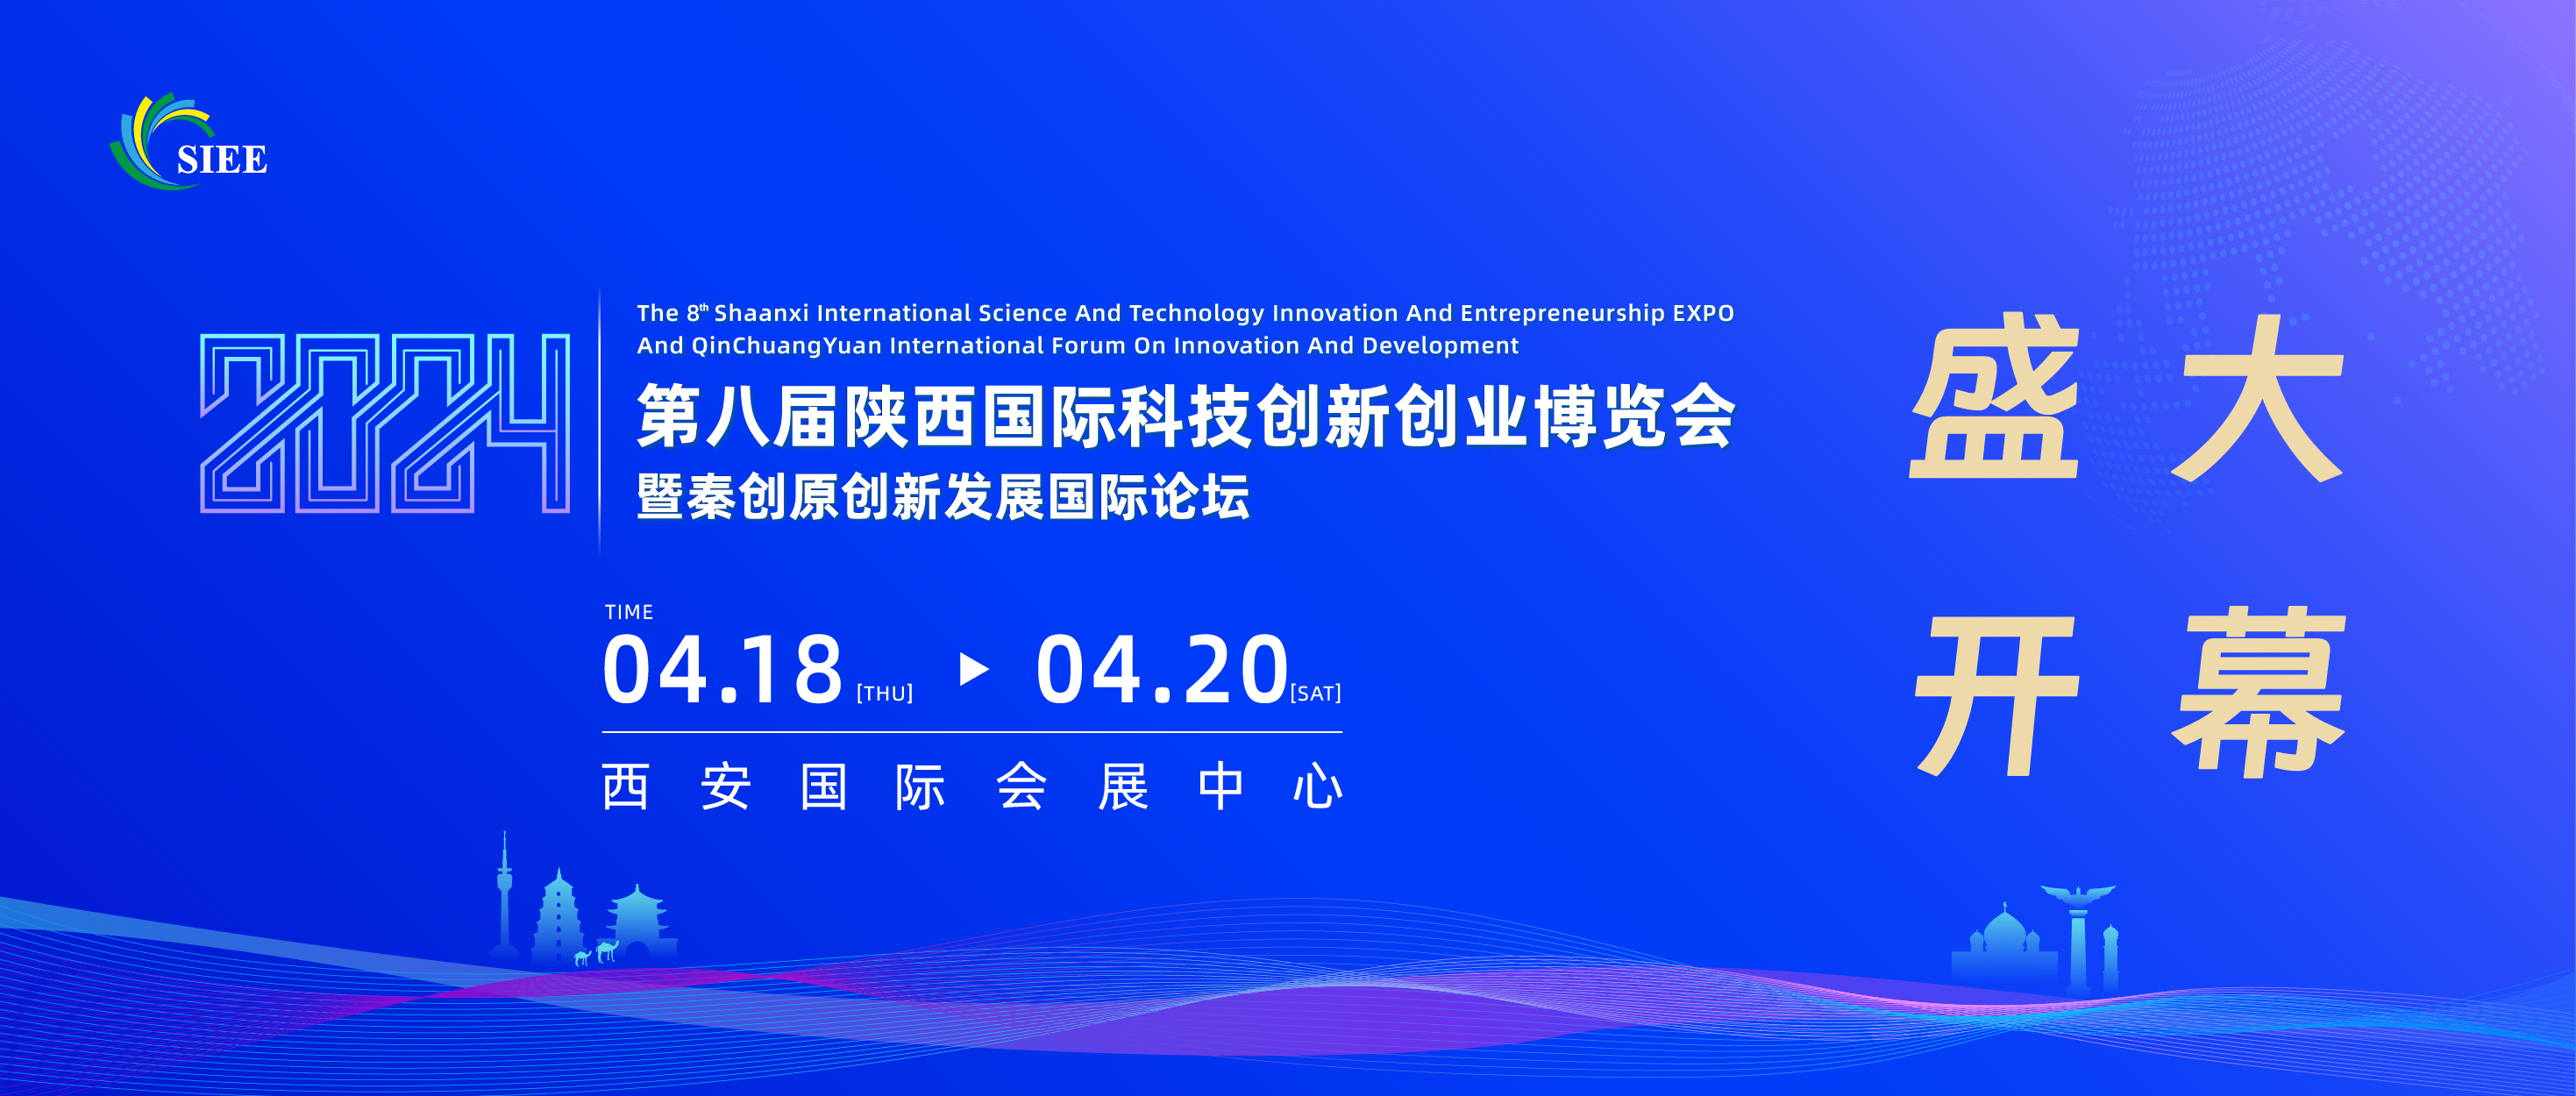 第八届陕西国际科技创新创业博览会暨秦创原创新发展国际论坛今日在西安开幕